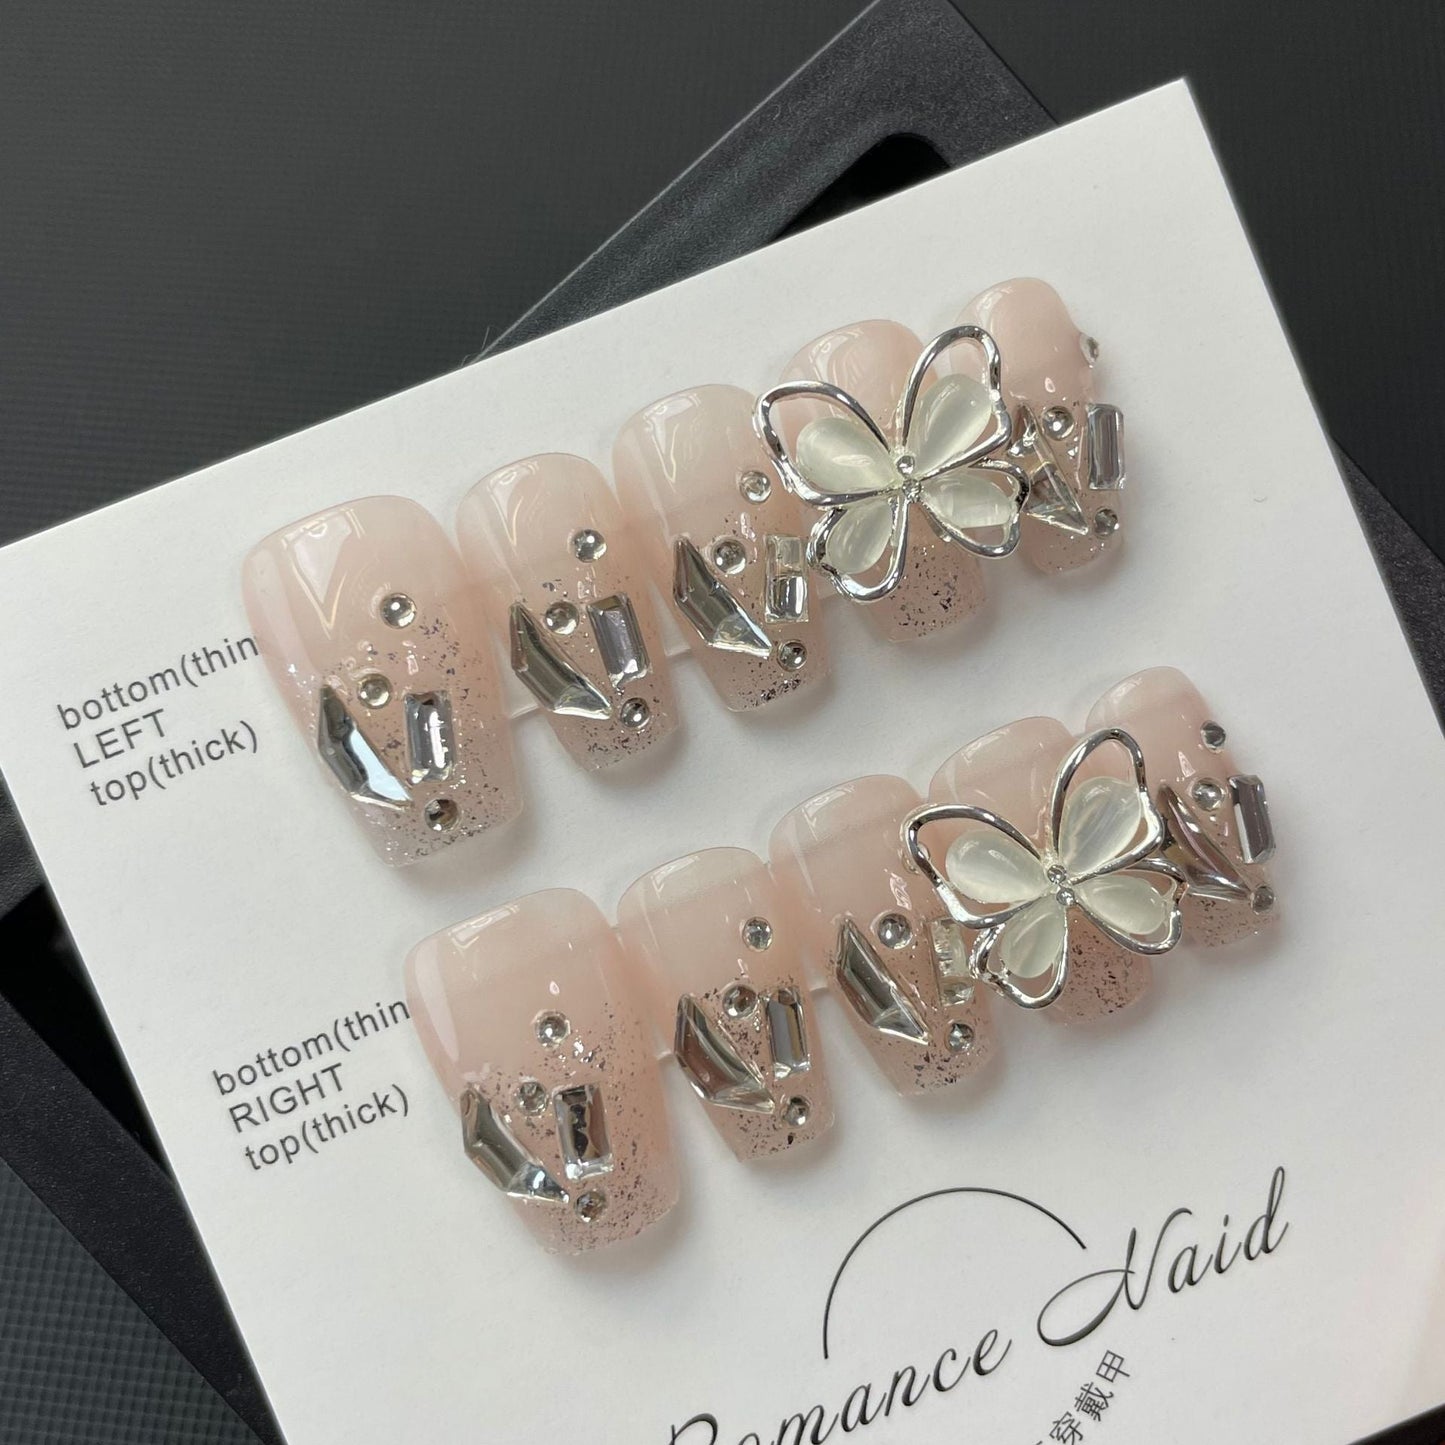 694/695 Vlinderstijl pers op nagels 100% handgemaakte kunstnagels roze nude kleur